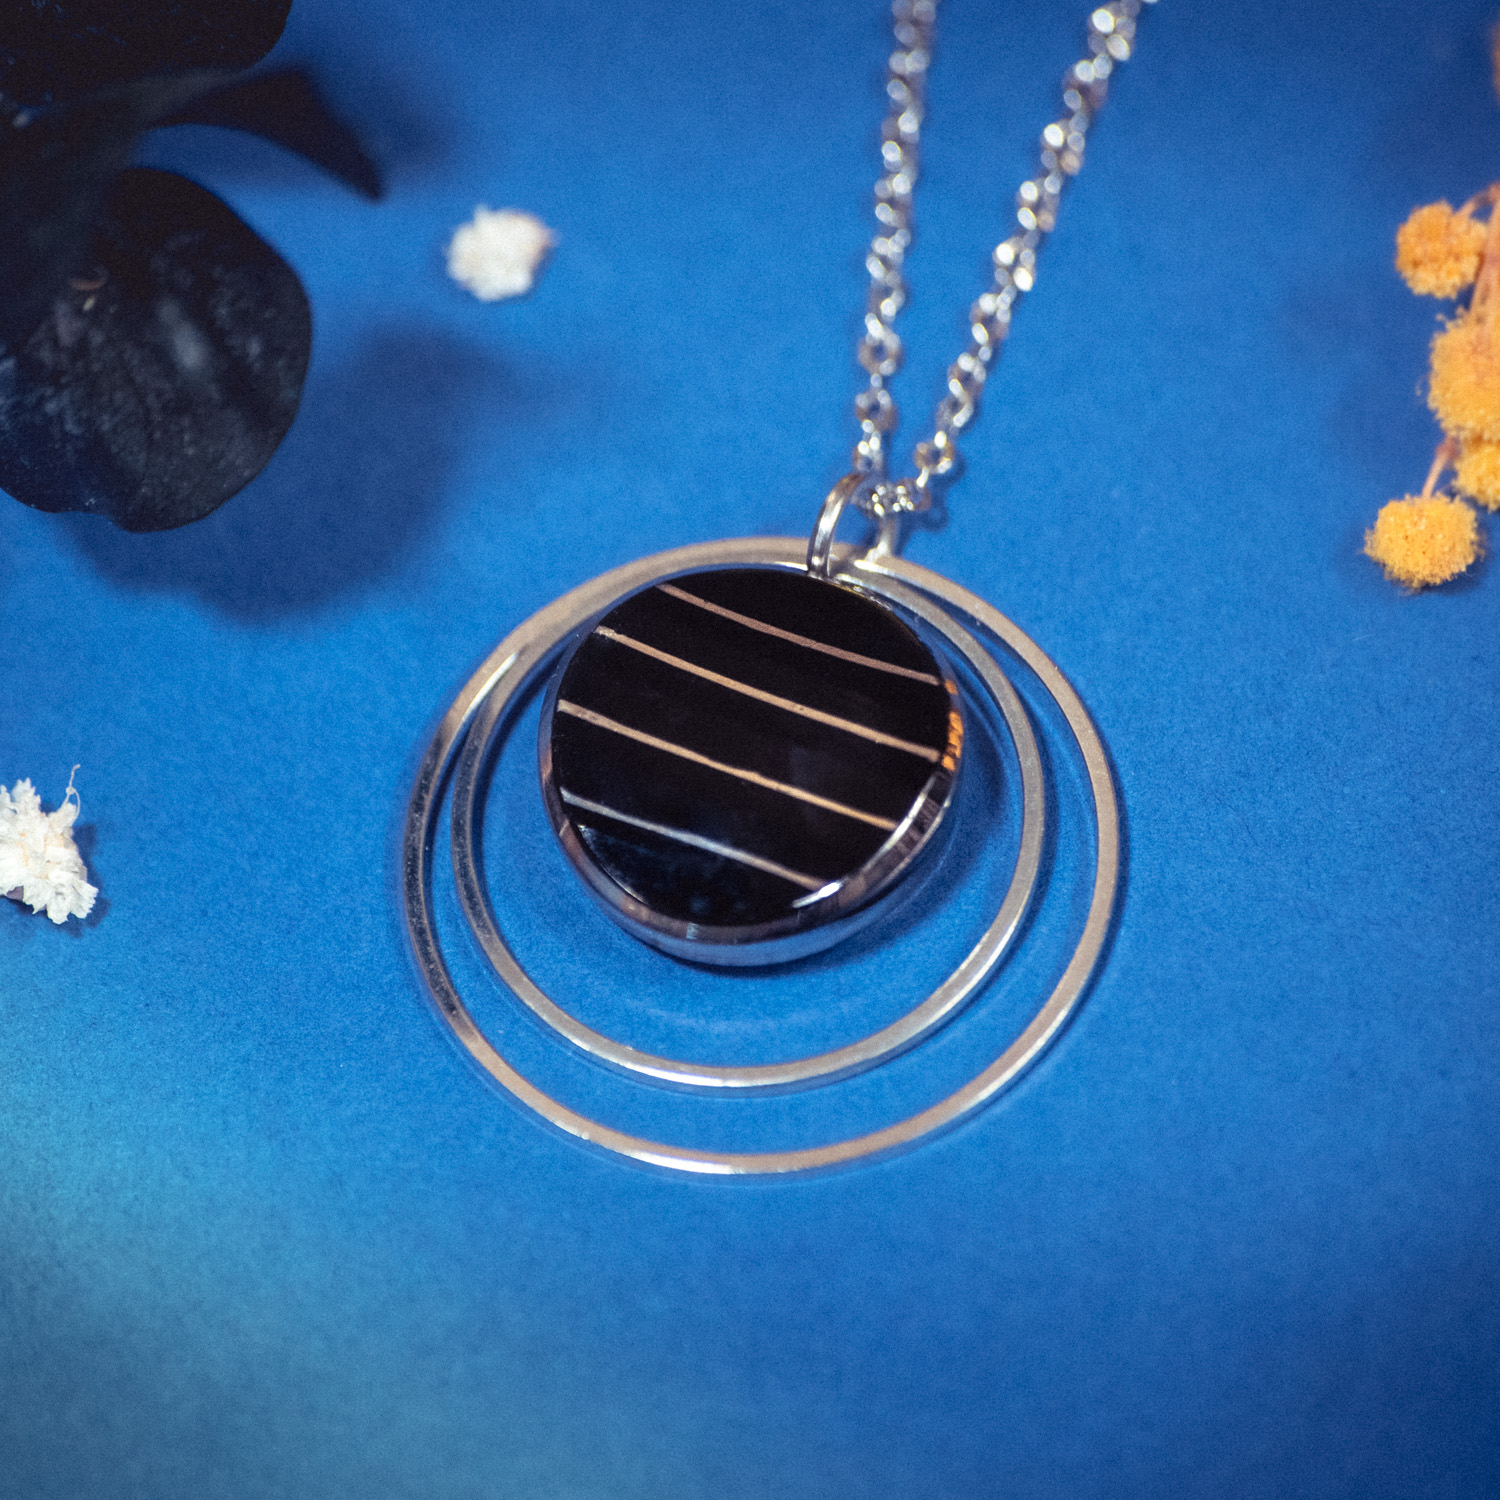 Assuna – Collier Lunare Louise – bouton ancien 1920 – collier d’inspiration vintage en forme de croissant de lune